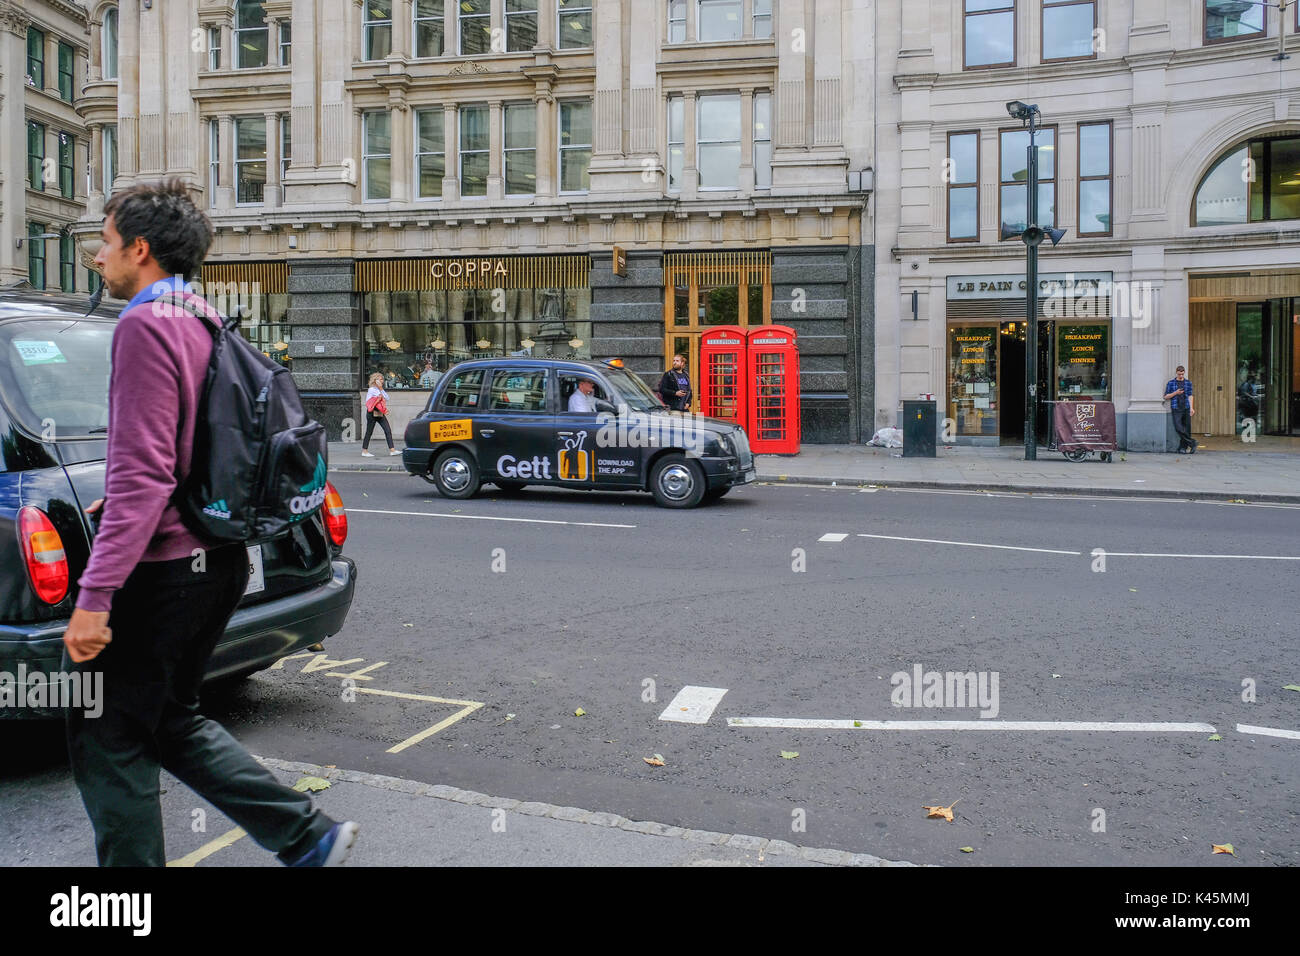 Londres, UK - 3 août 2017 : scène de rue dans la ville avec Londres et taxi rouge emblématique des cabines téléphoniques. Banque D'Images